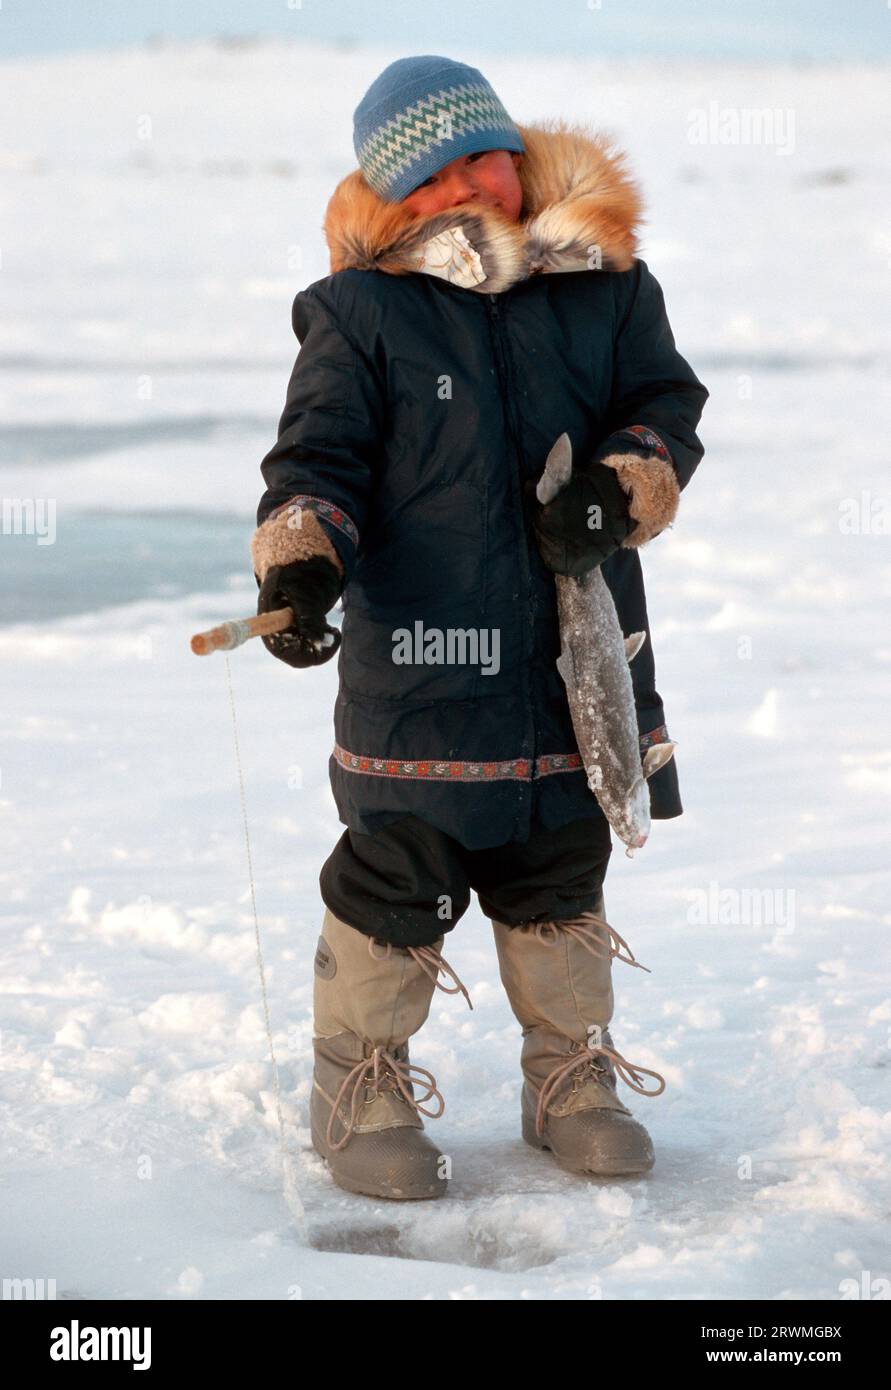 Kanada, Provinz Quebec, Nunavik: Eskimo--Junge angelt durch ein Loch im Eis | Inuit boy fishing thru a hole on a lake in Nunavik, Quebec Province, North-Canada Stock Photo